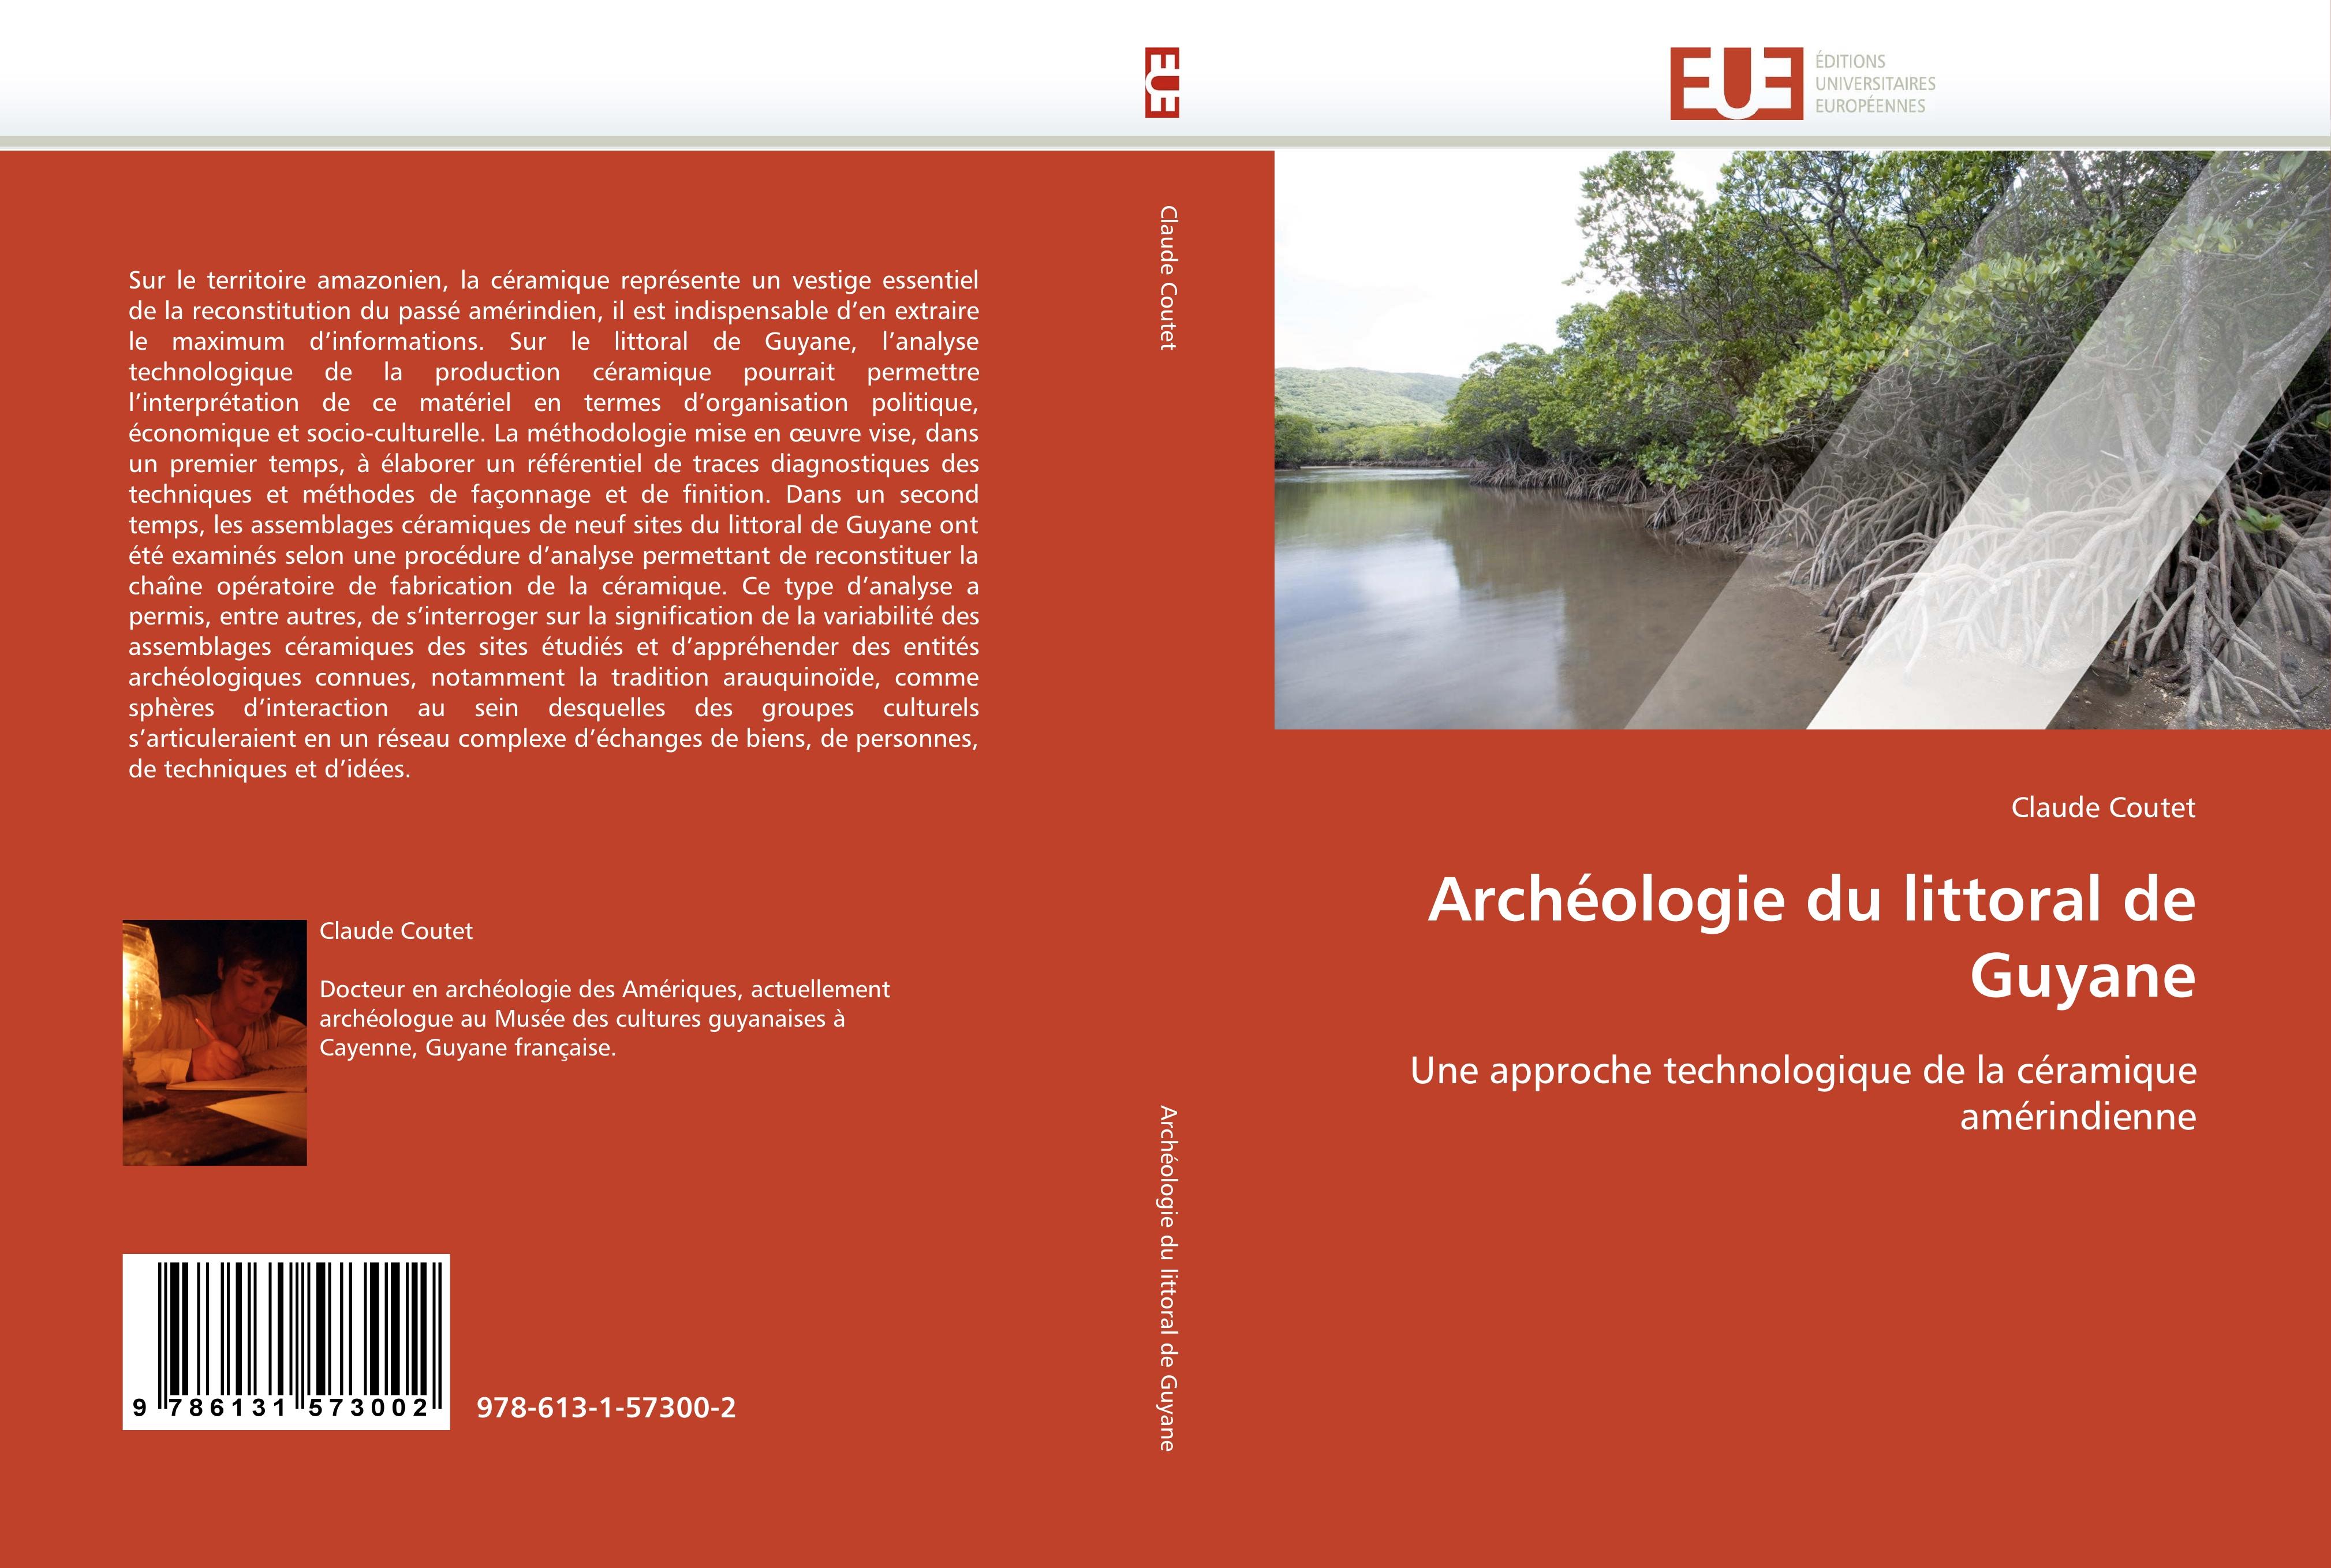 Archéologie du littoral de Guyane - Claude Coutet